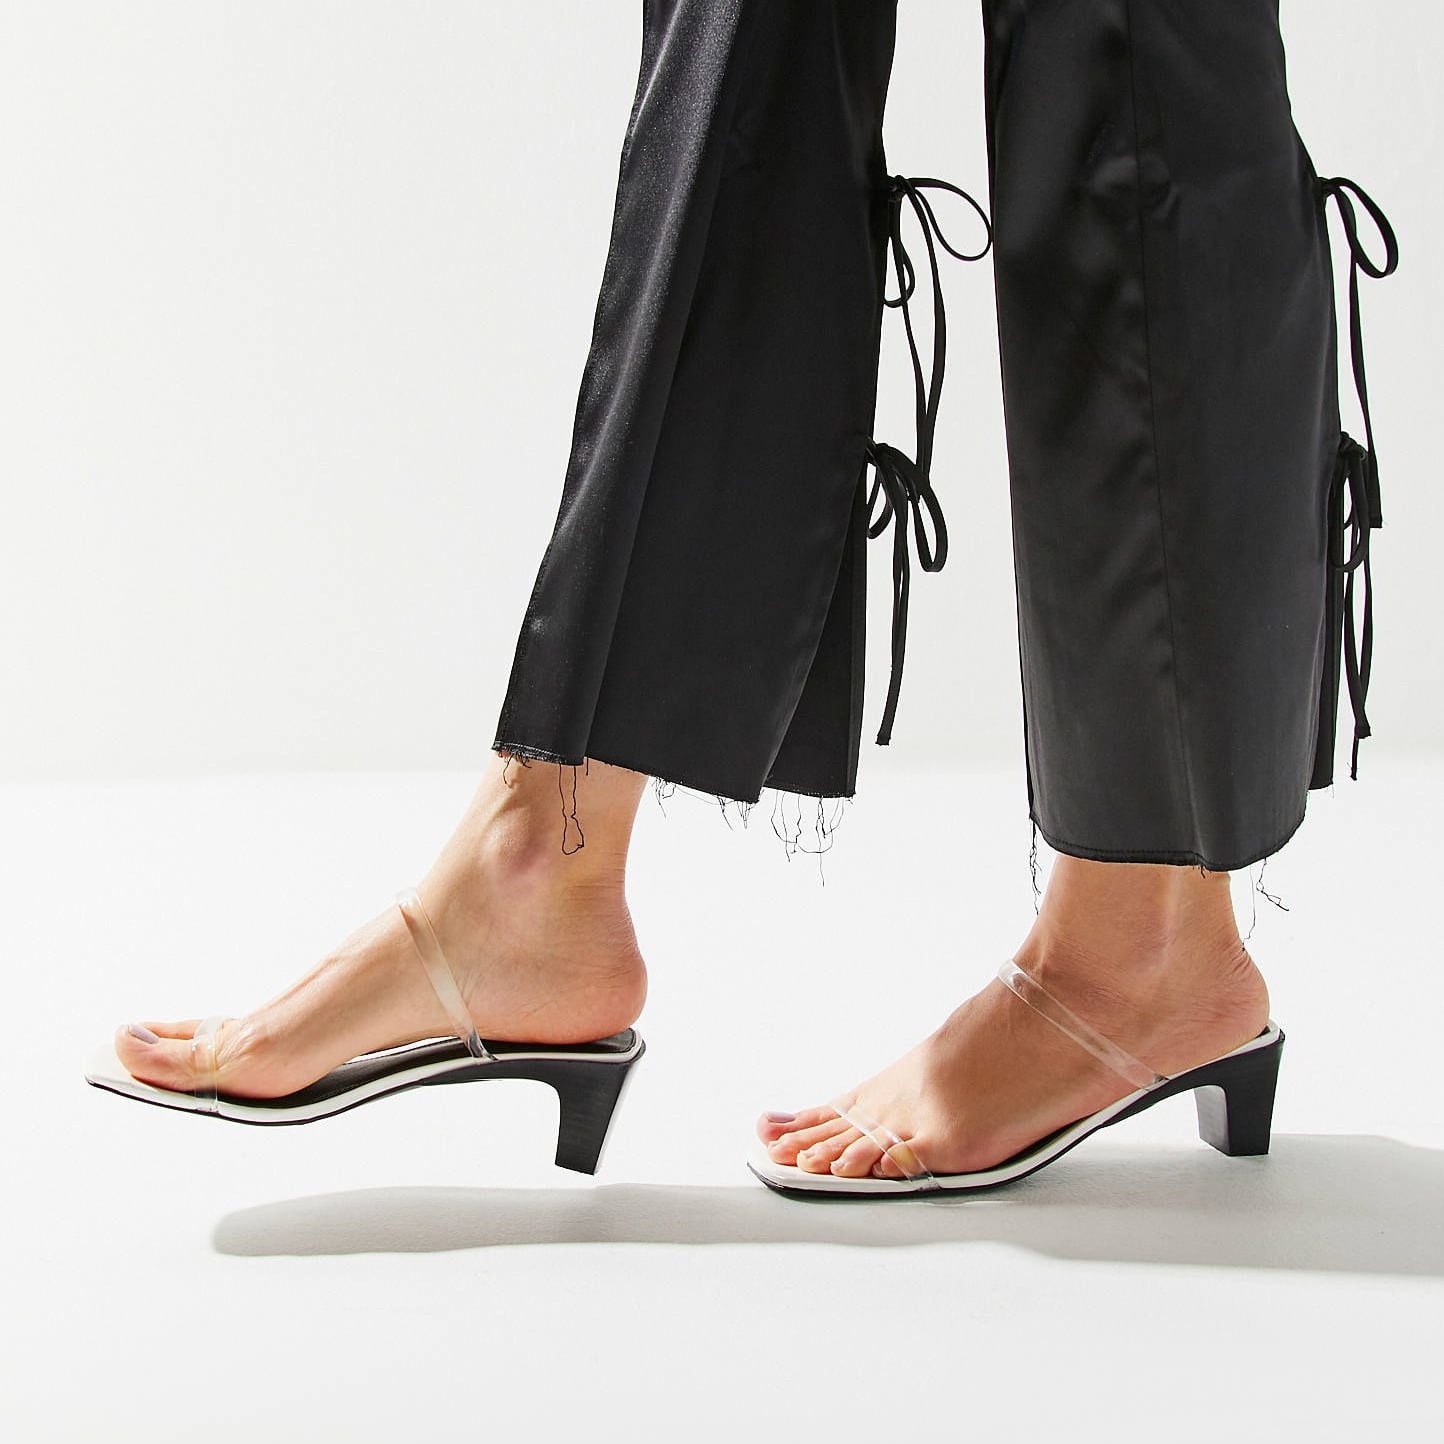 Best Sandals For Women Under $50